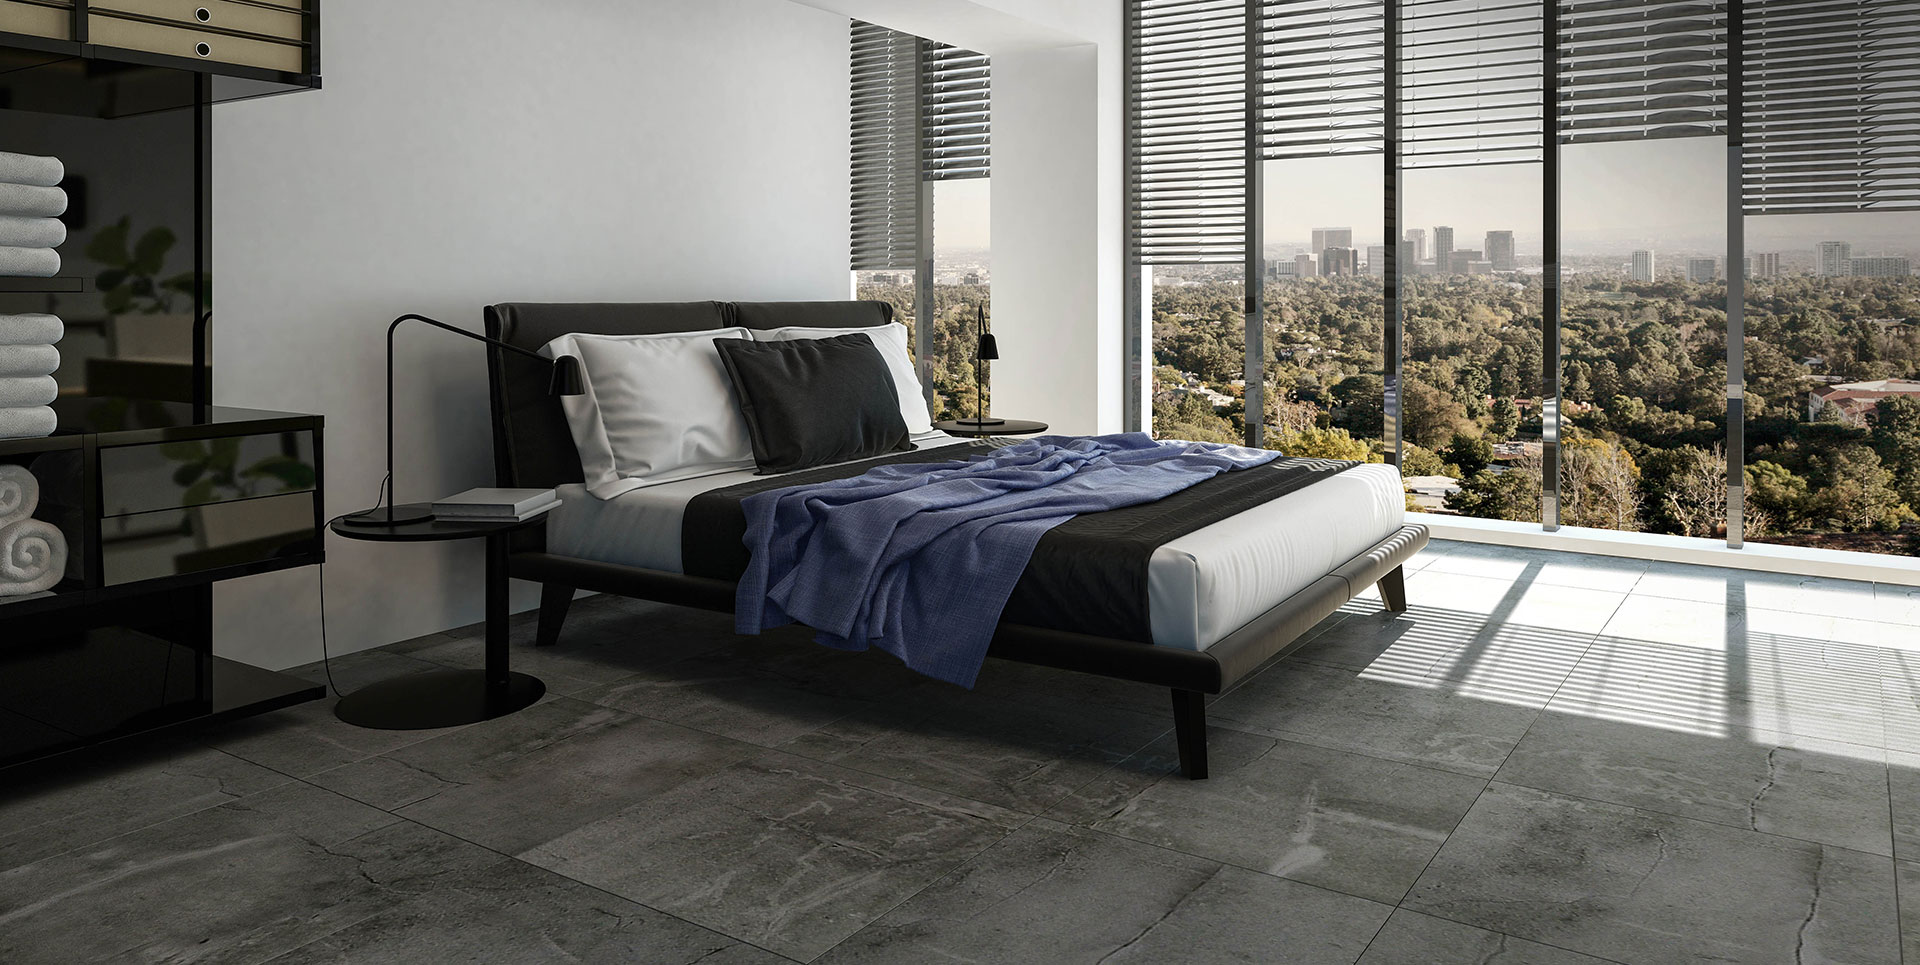 New trends in Bedroom interior Design